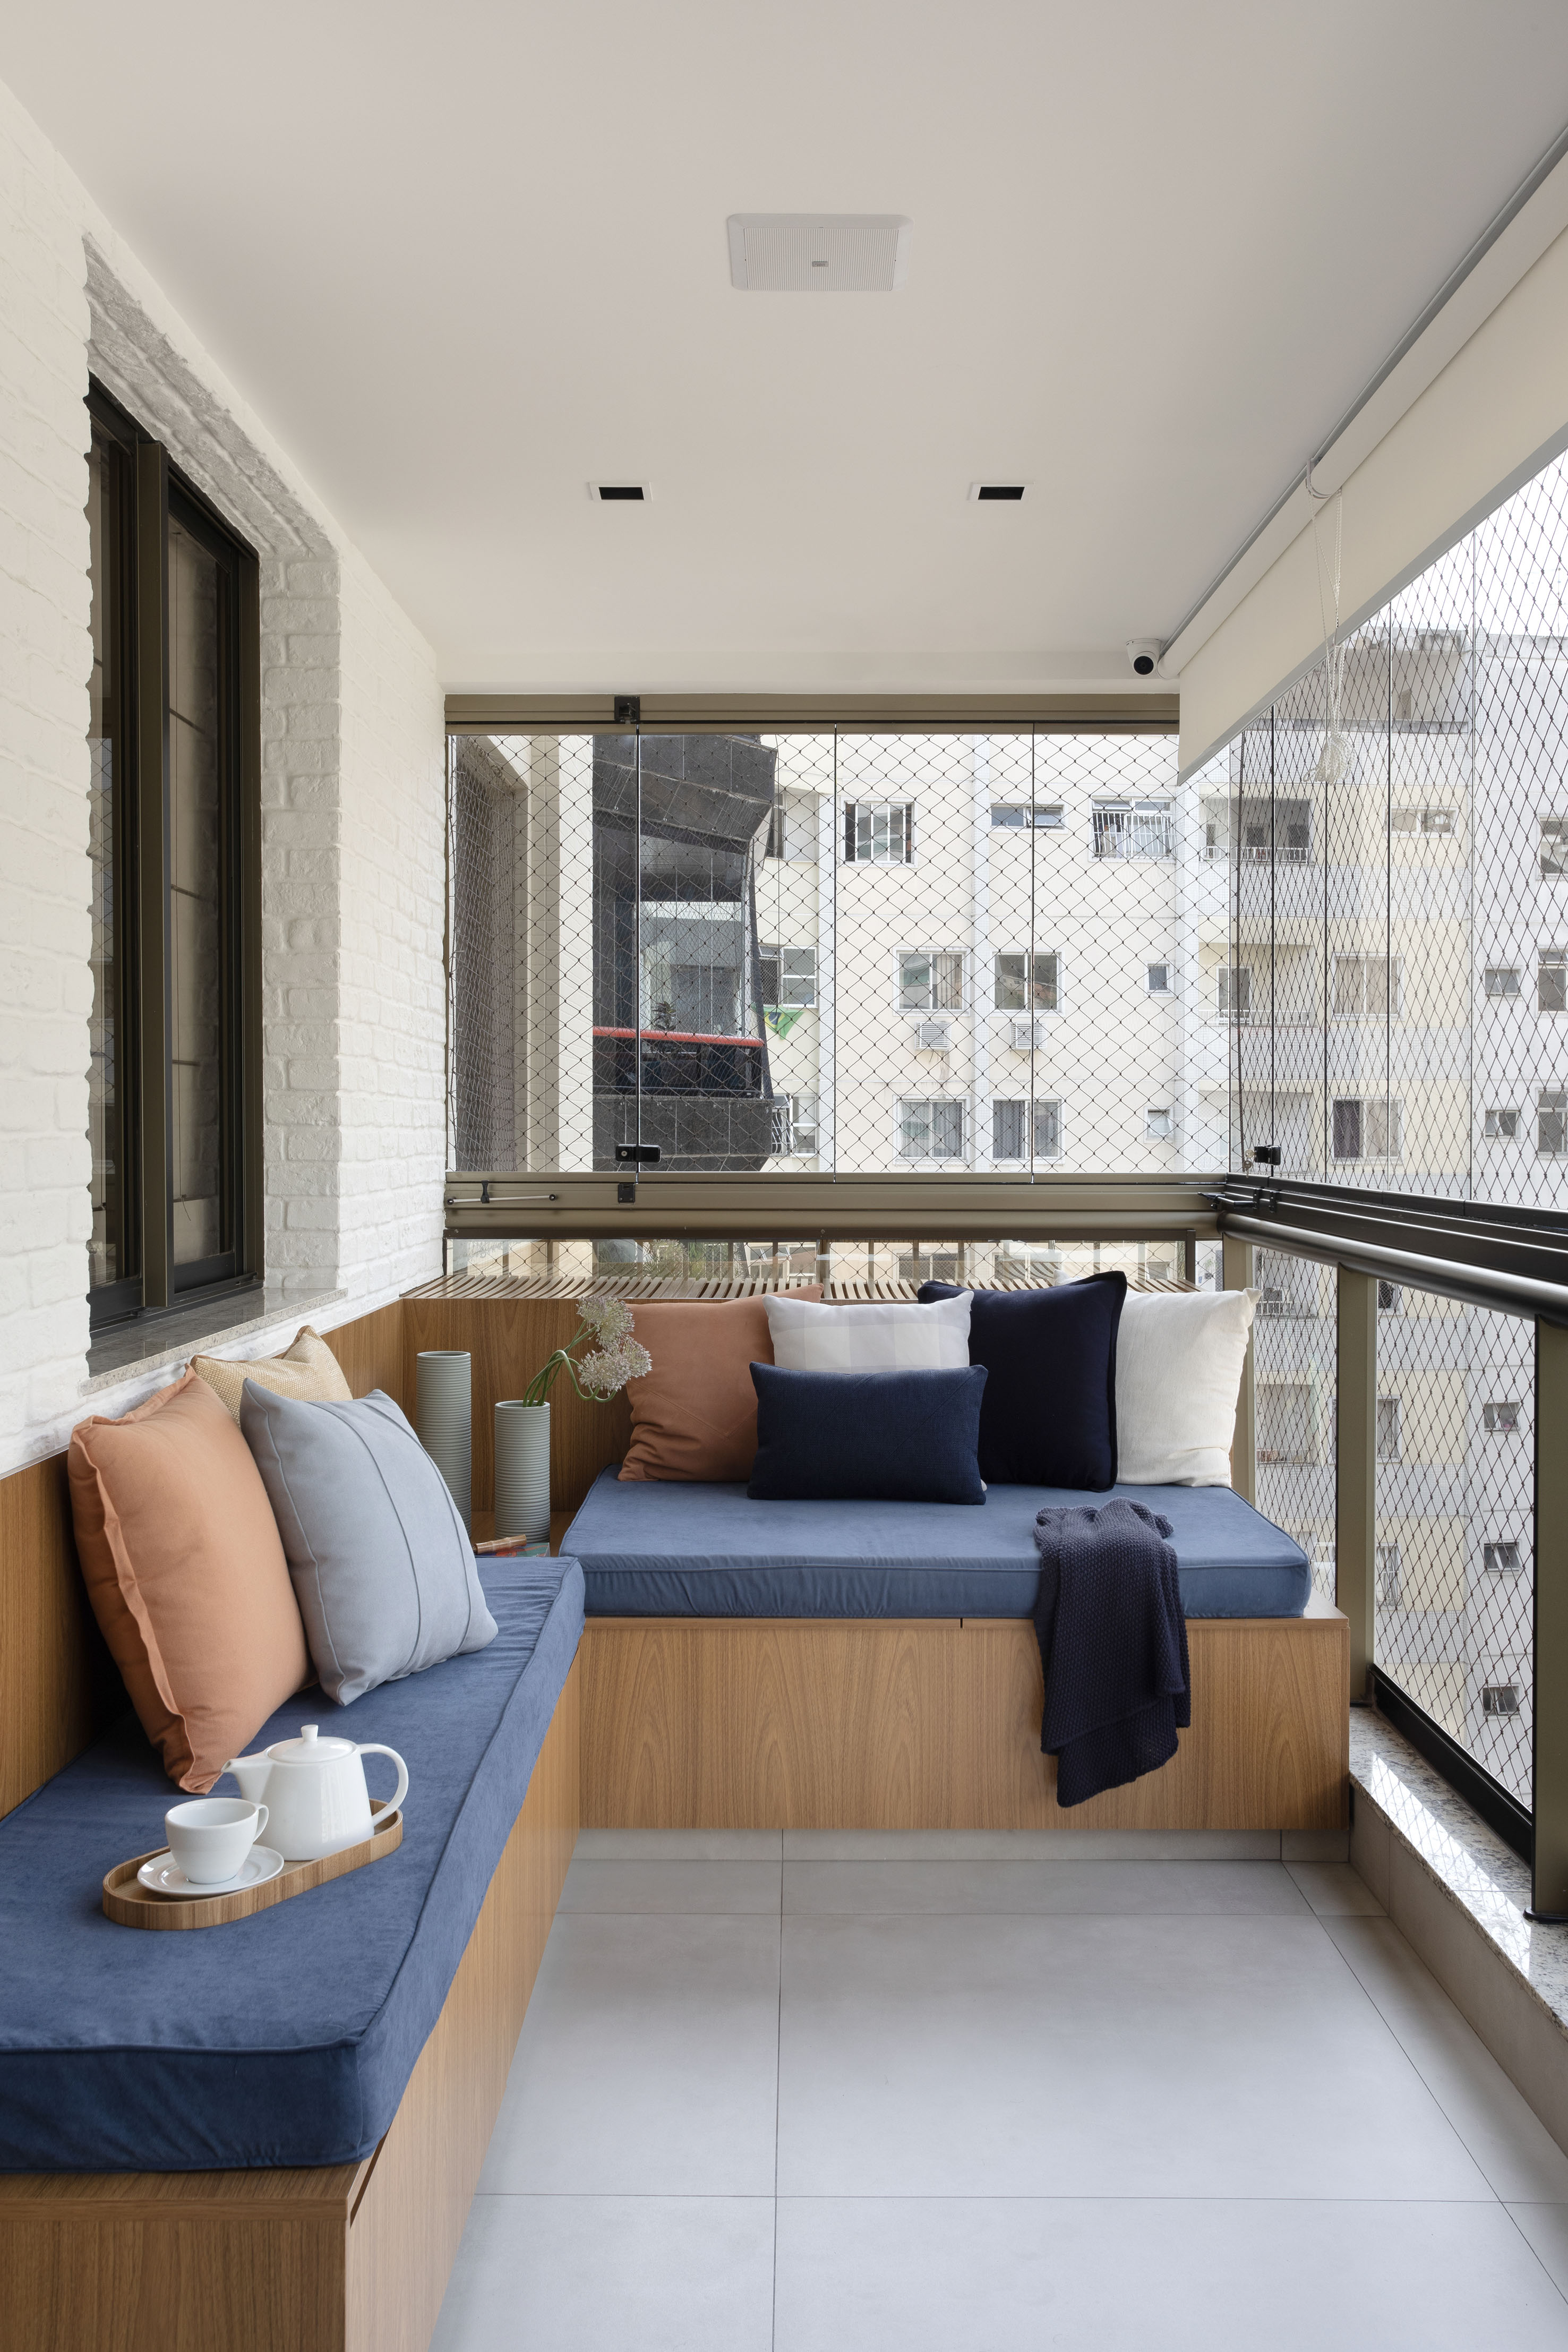 Varanda de 13 m² tem banco-baú, bancada gourmet e piso de porcelanato. Projeto de Travessa Arquitetura. Na foto, banco com baú, futon azul.